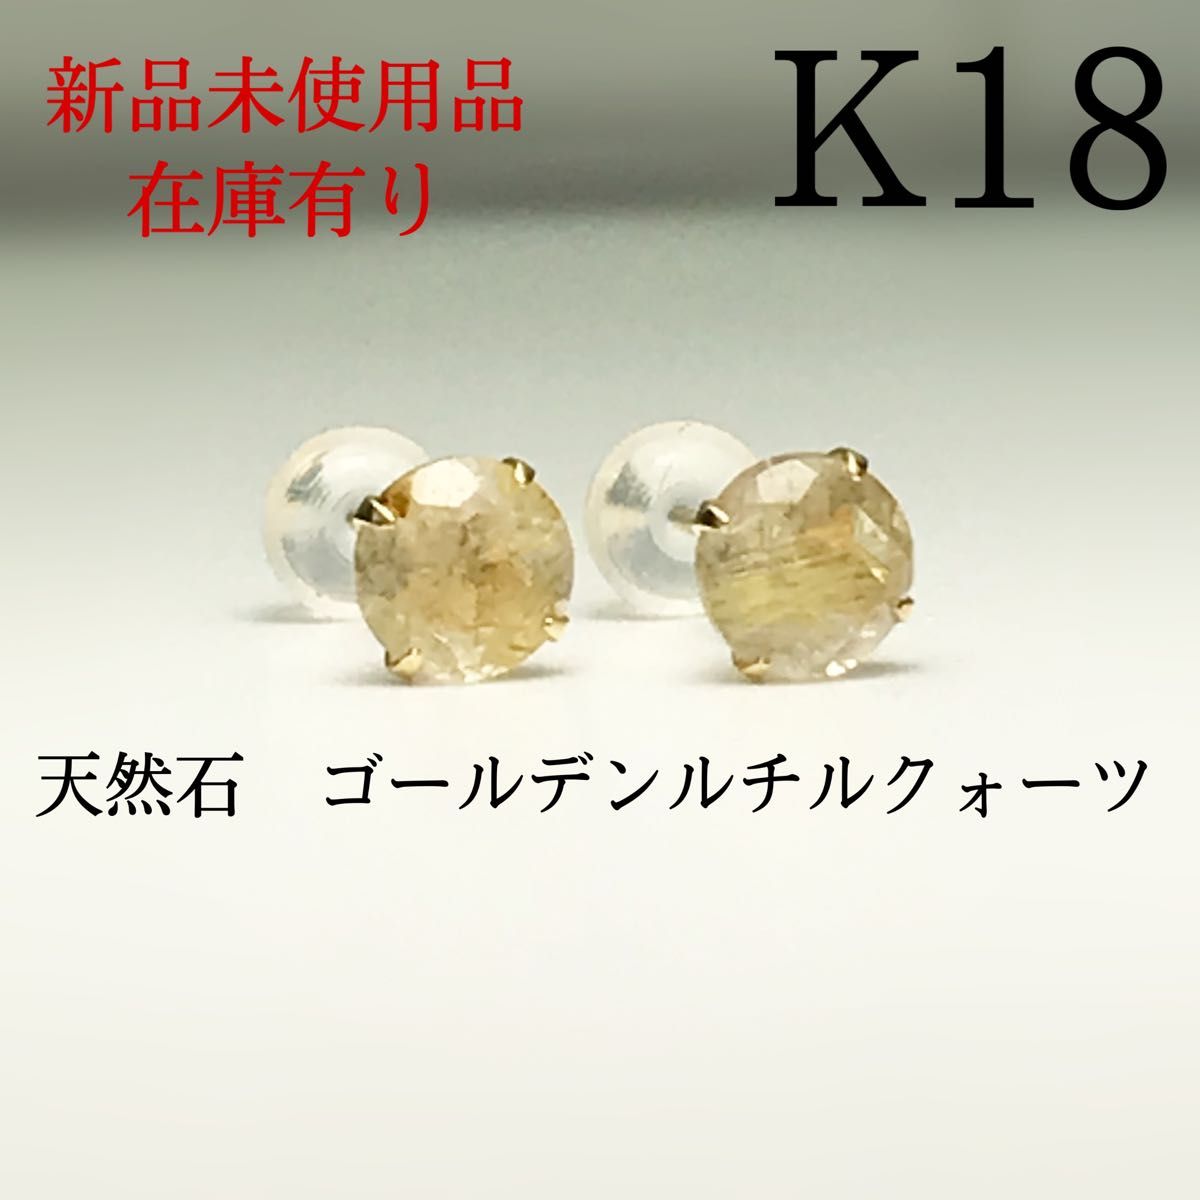 いいスタイル 新品 K18 K18 ピアス 18金 18k 5mm 5mm 天然石 水晶